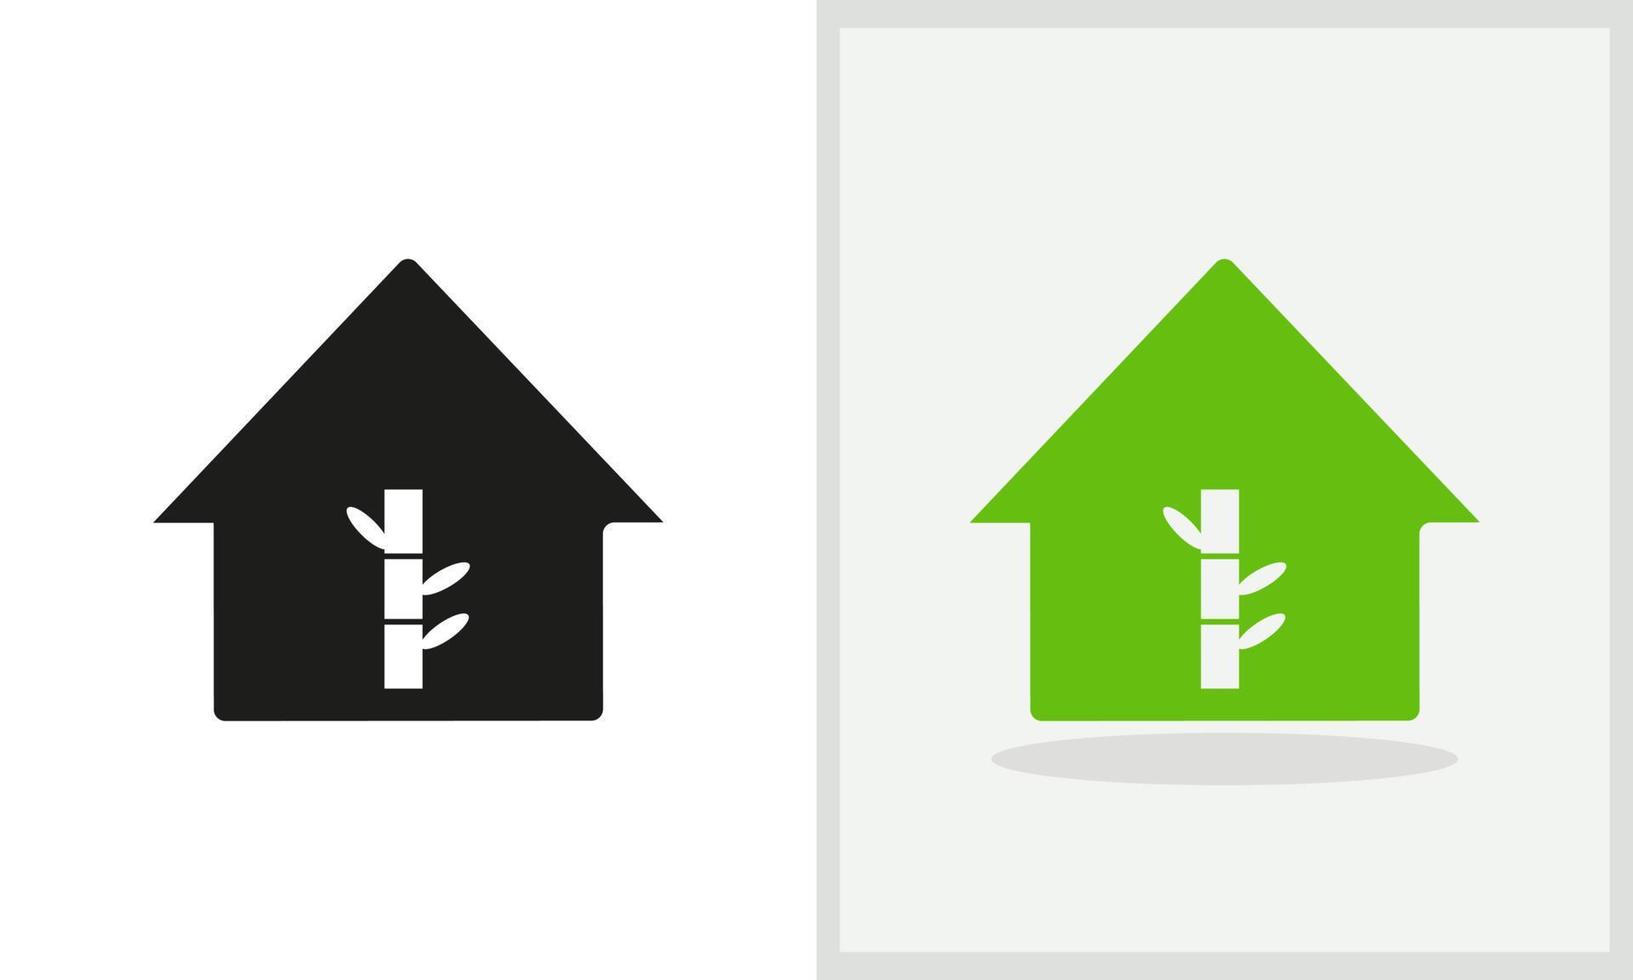 Bamboo House logo design. House logo with Bamboo concept vector. Bamboo and Home logo design vector